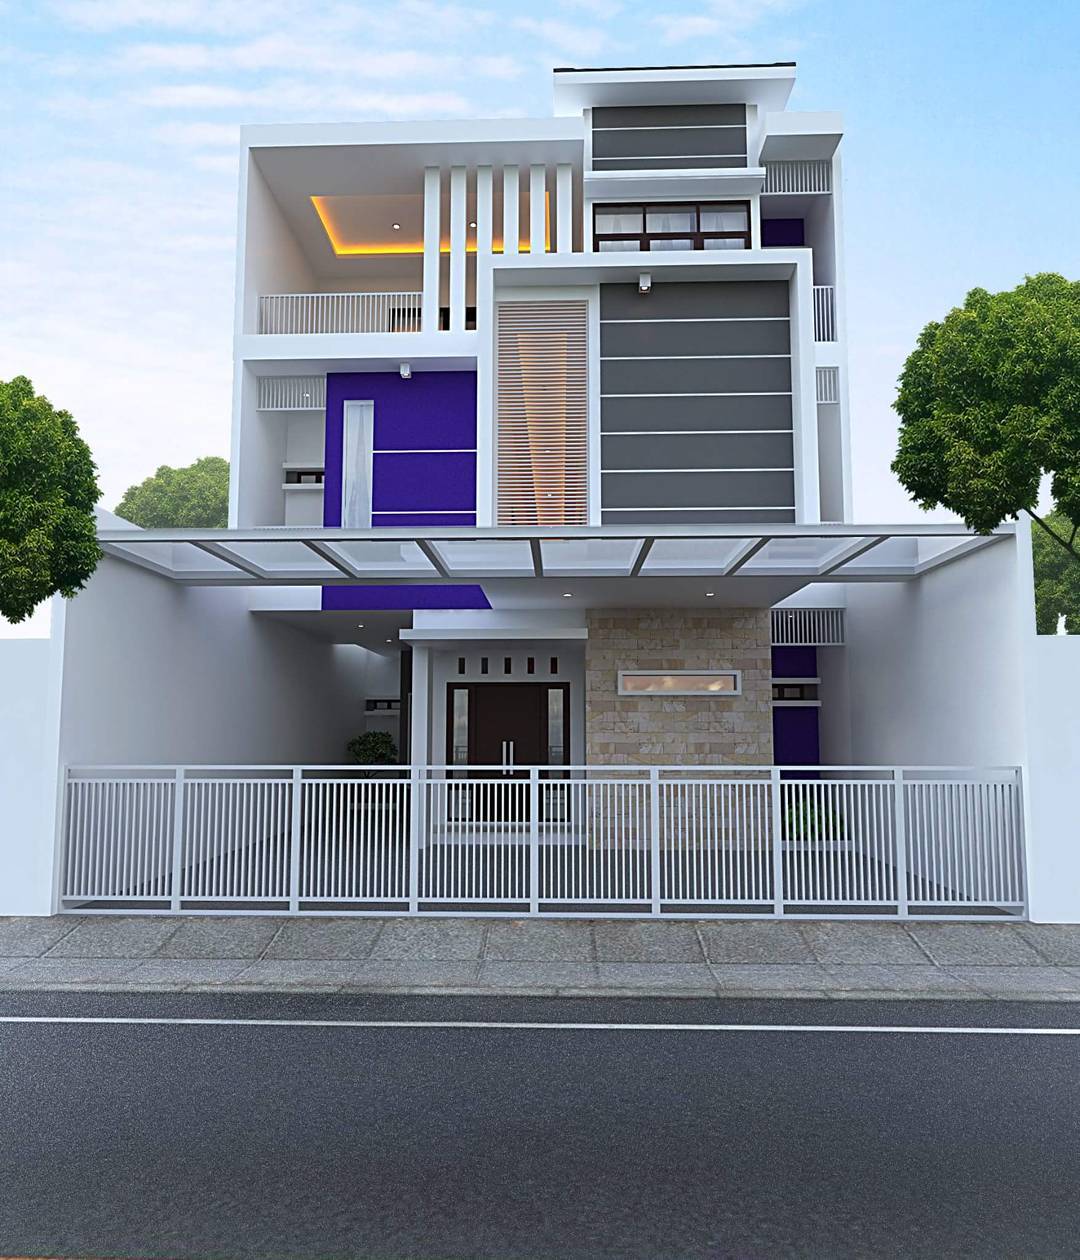 desain rumah minimalis cantik - Desain Rumah Tingkat Minimalis Cantik